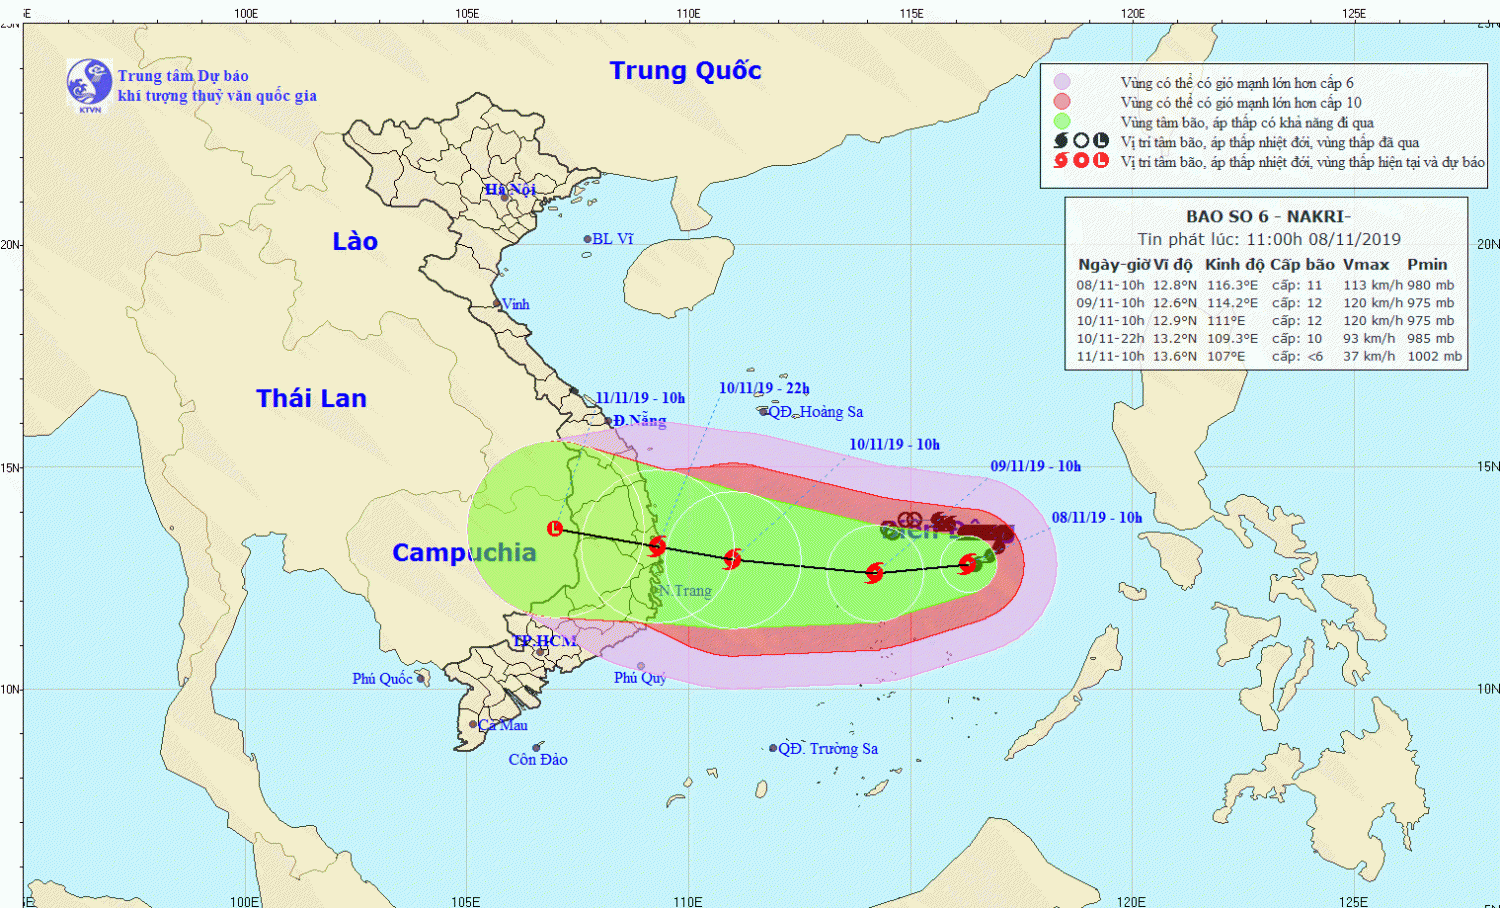 Tin bão trên Biển Đông - cơn bão số 06 (11h00 ngày 08/11)